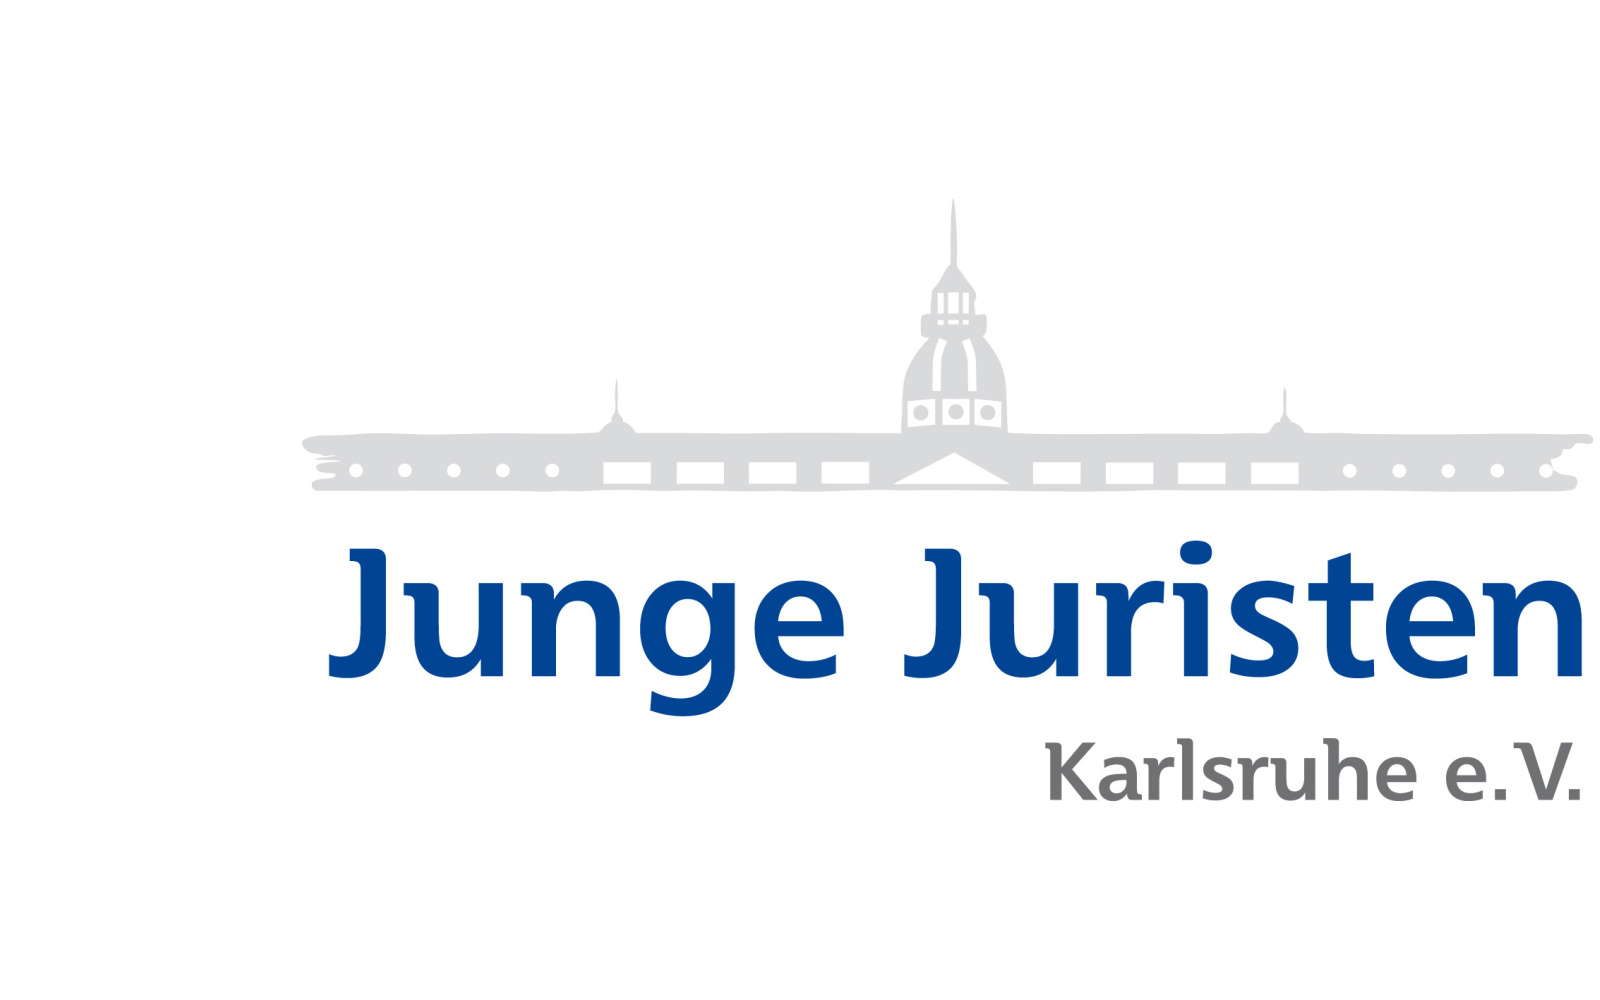 Logo of the Jungen Juristen Karlsruhe e.V.